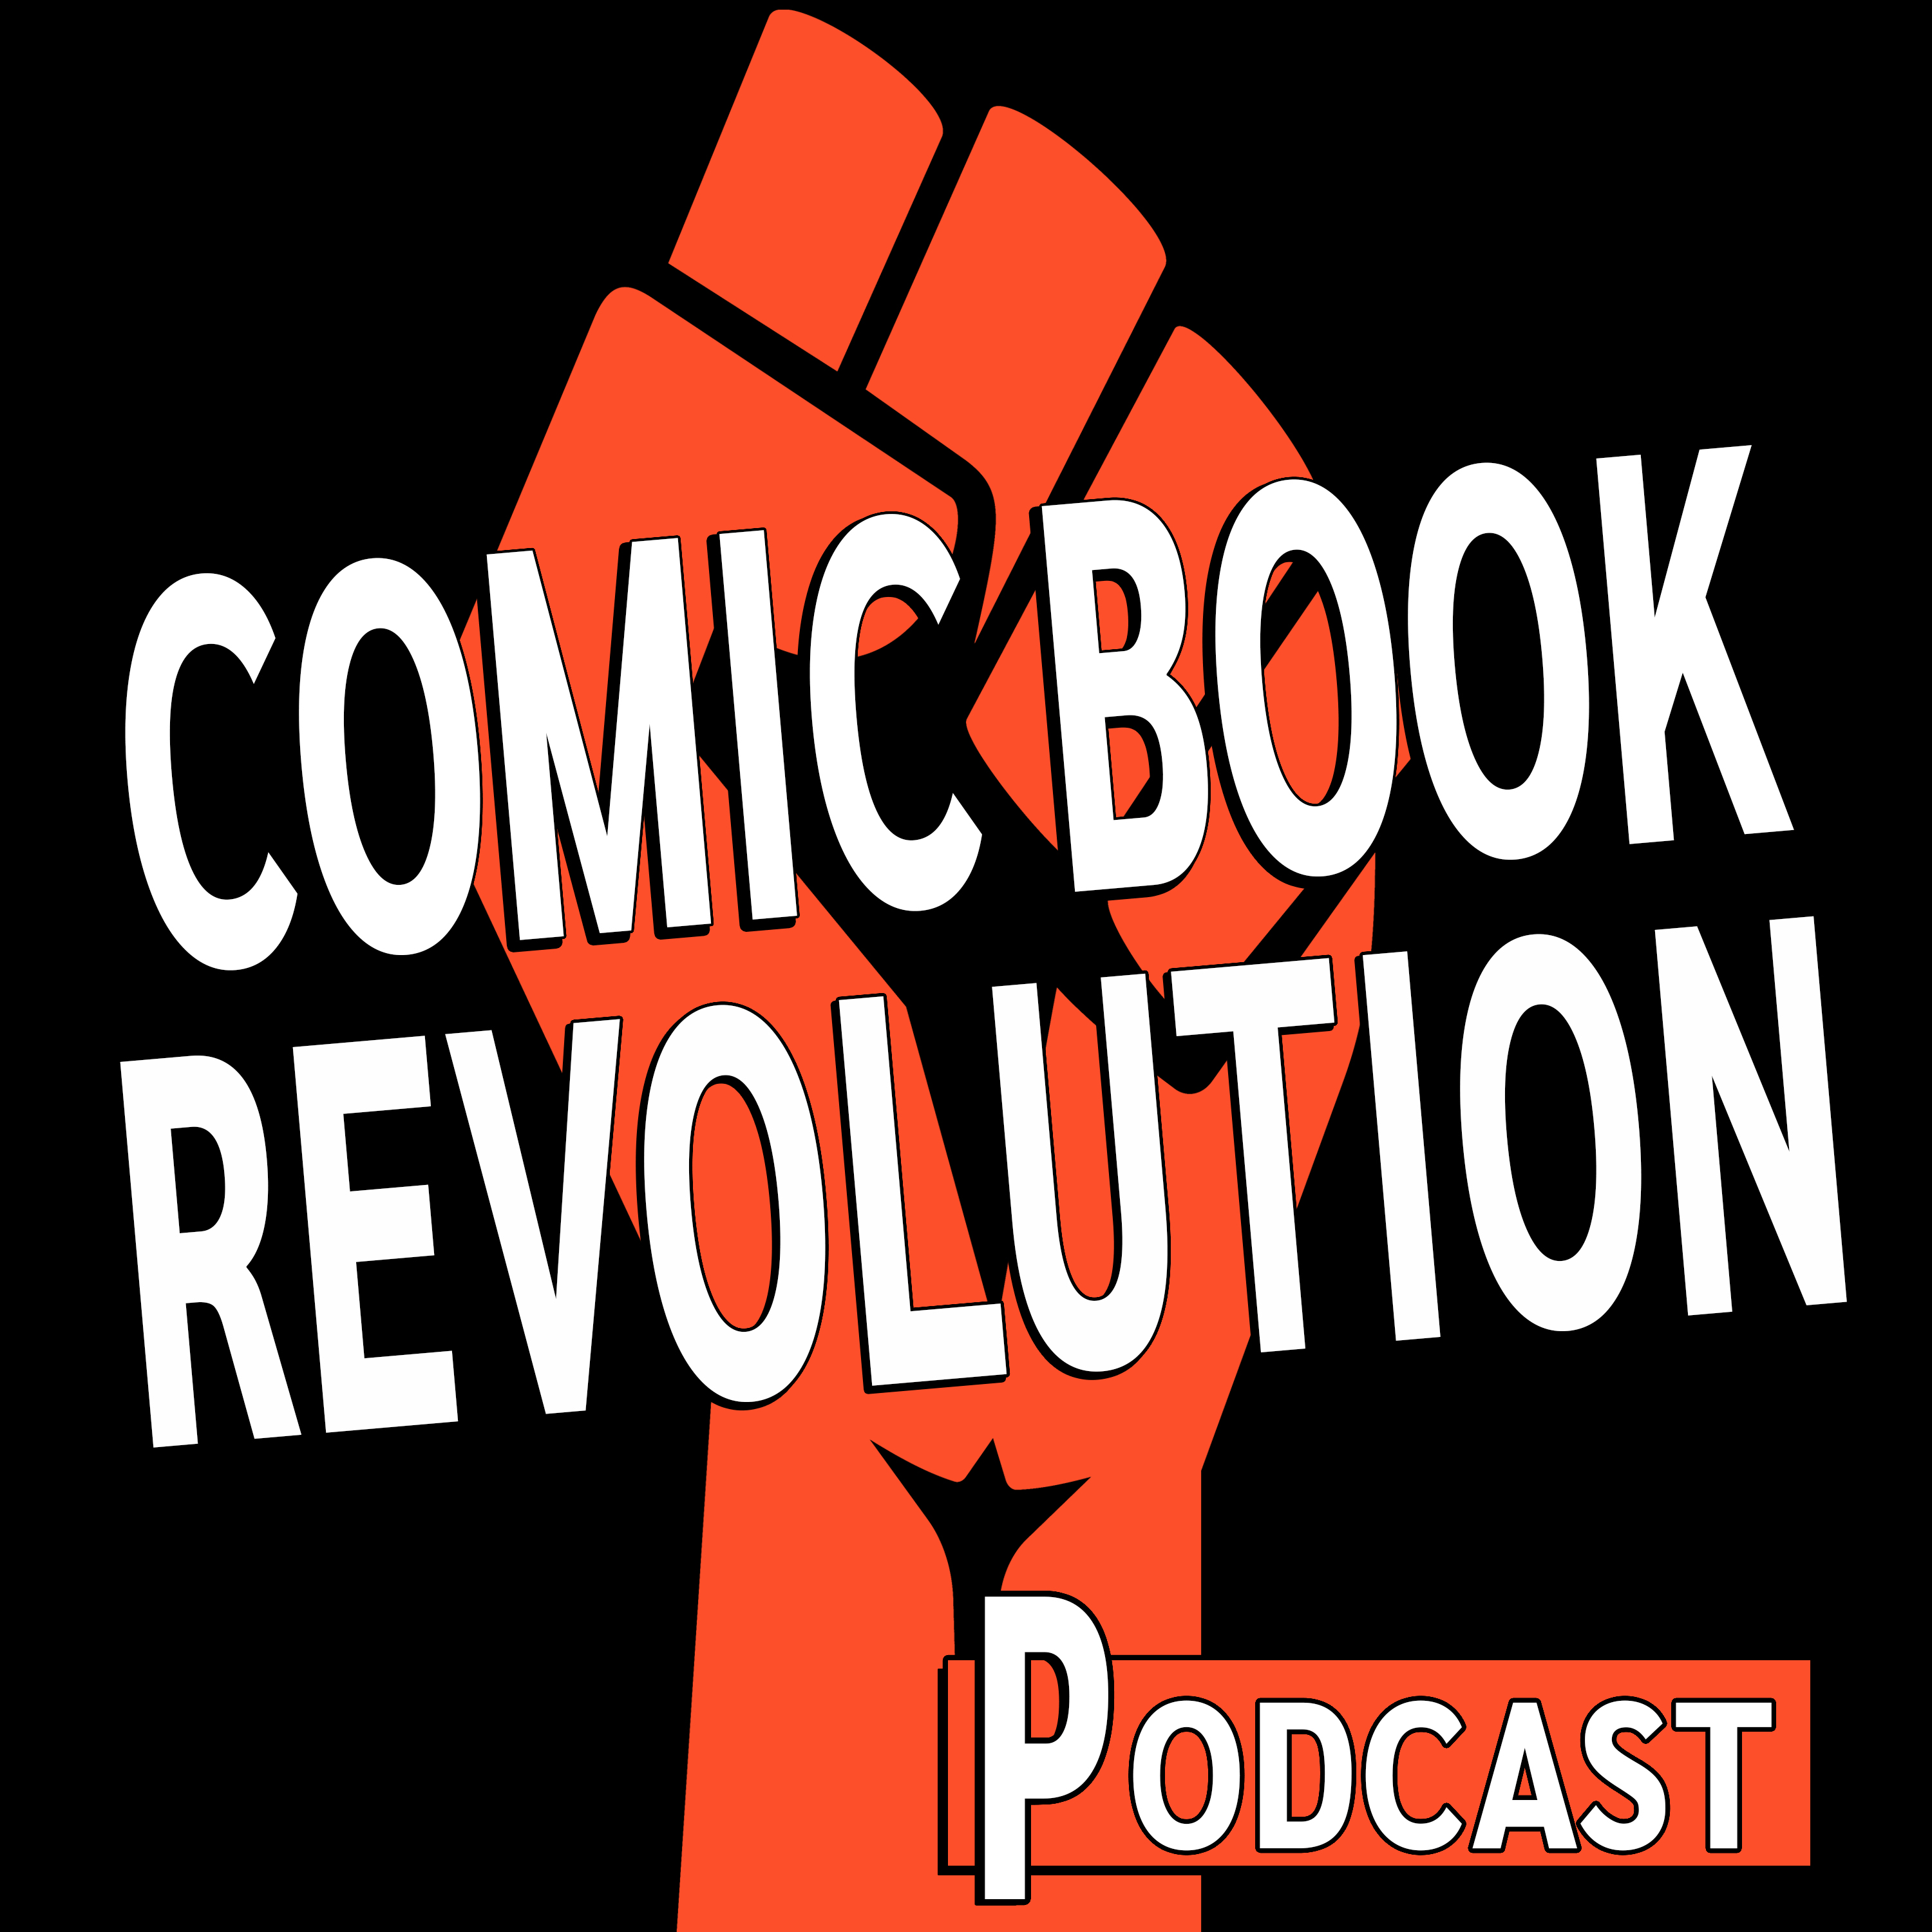 Comic Book Revolution Podcast Episode 09